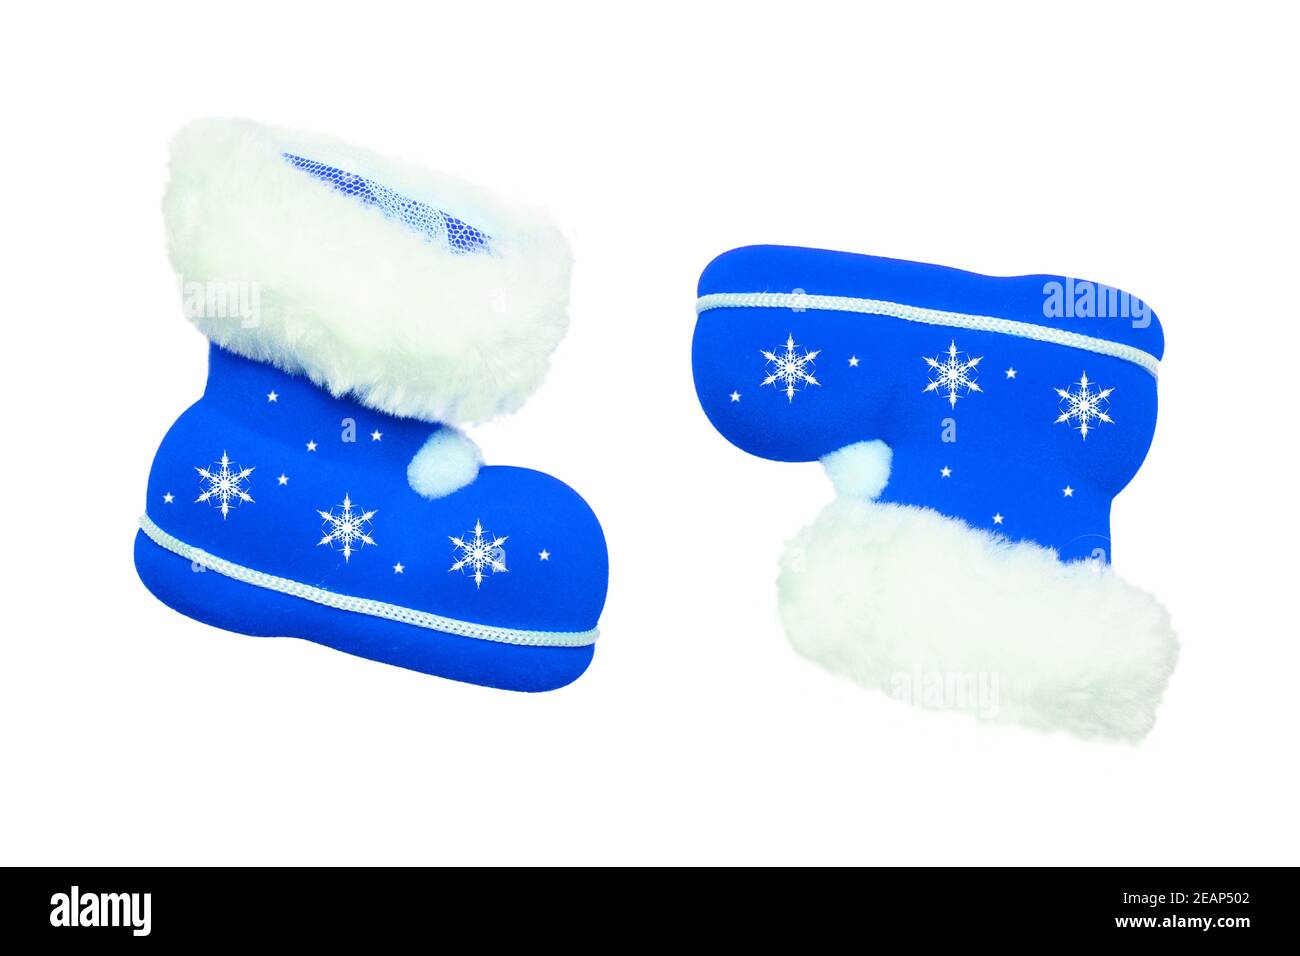 Weihnachtsschmuck. Ein Paar blaue Weihnachtsstiefel oder Weihnachtsmann Stiefel mit weißen Sternornamenten isoliert auf weißem Hintergrund. Stockfoto